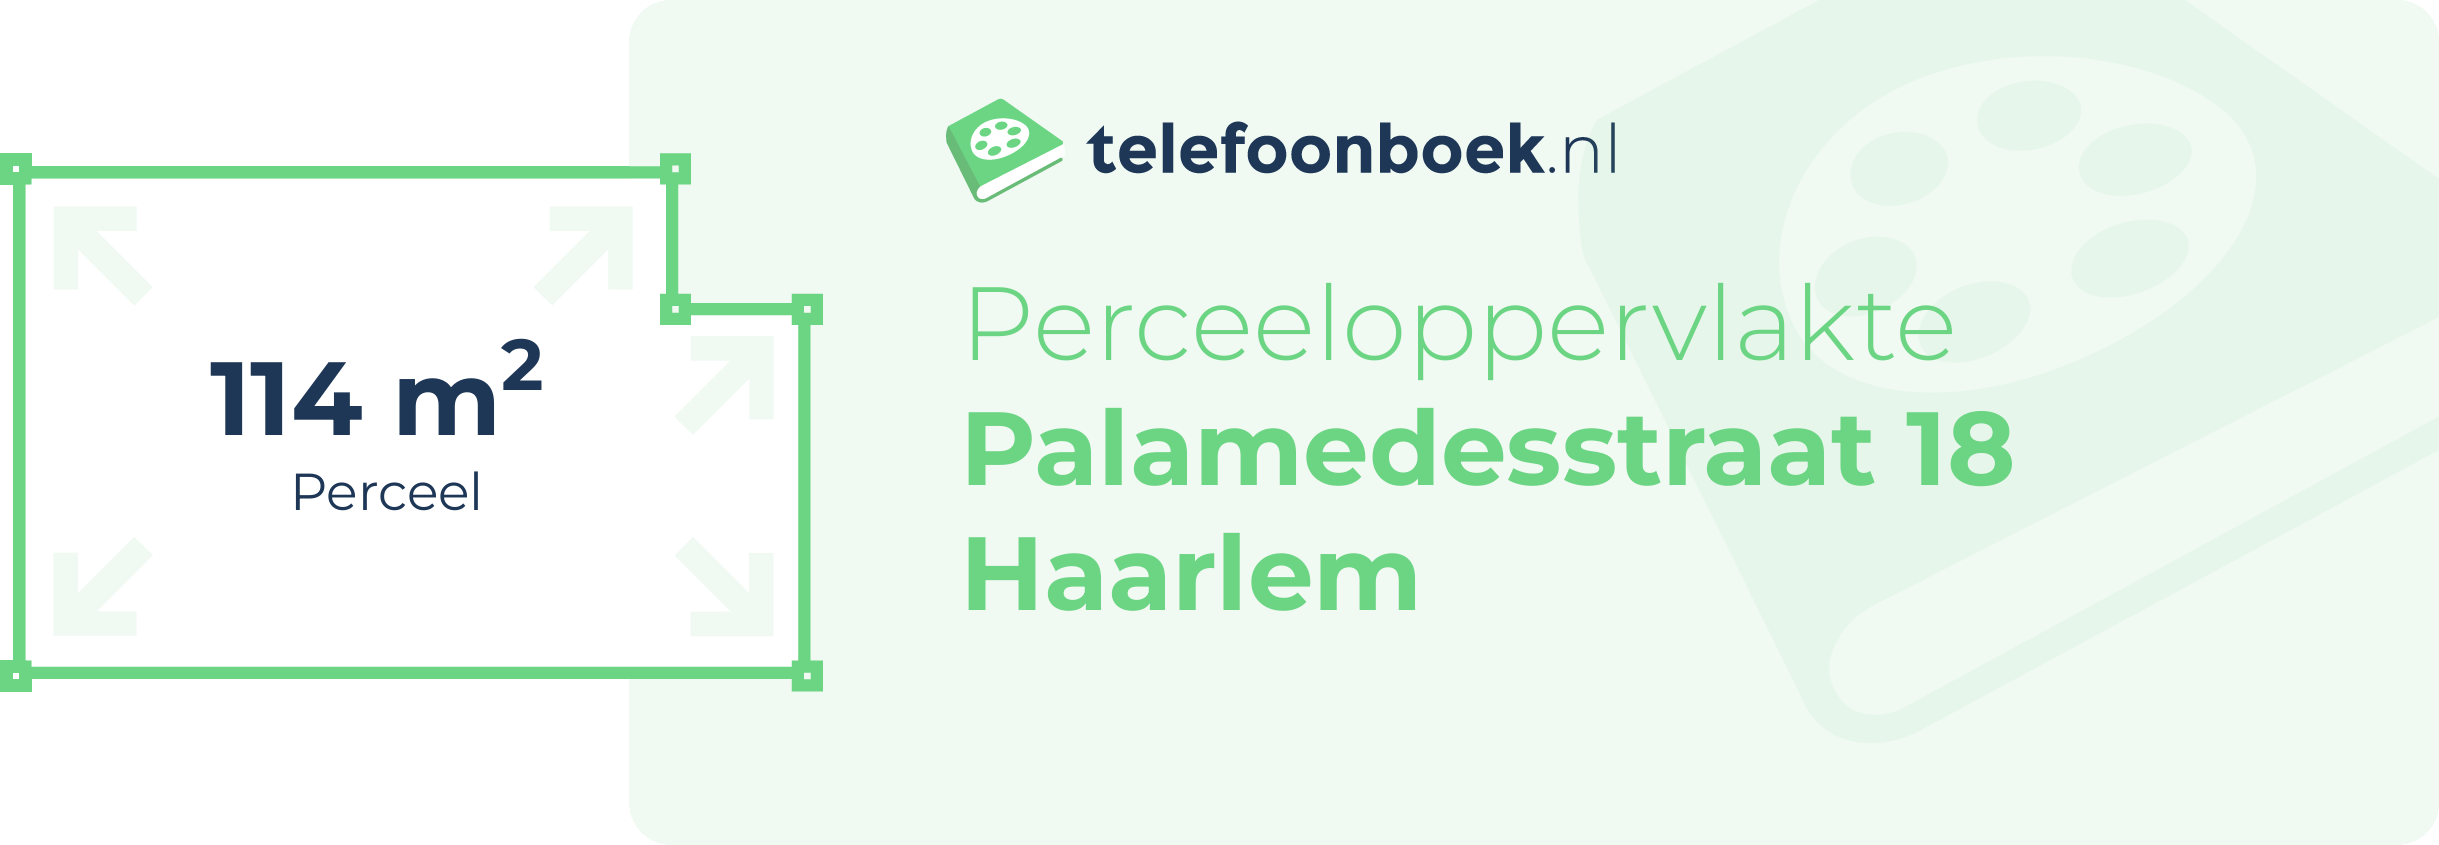 Perceeloppervlakte Palamedesstraat 18 Haarlem